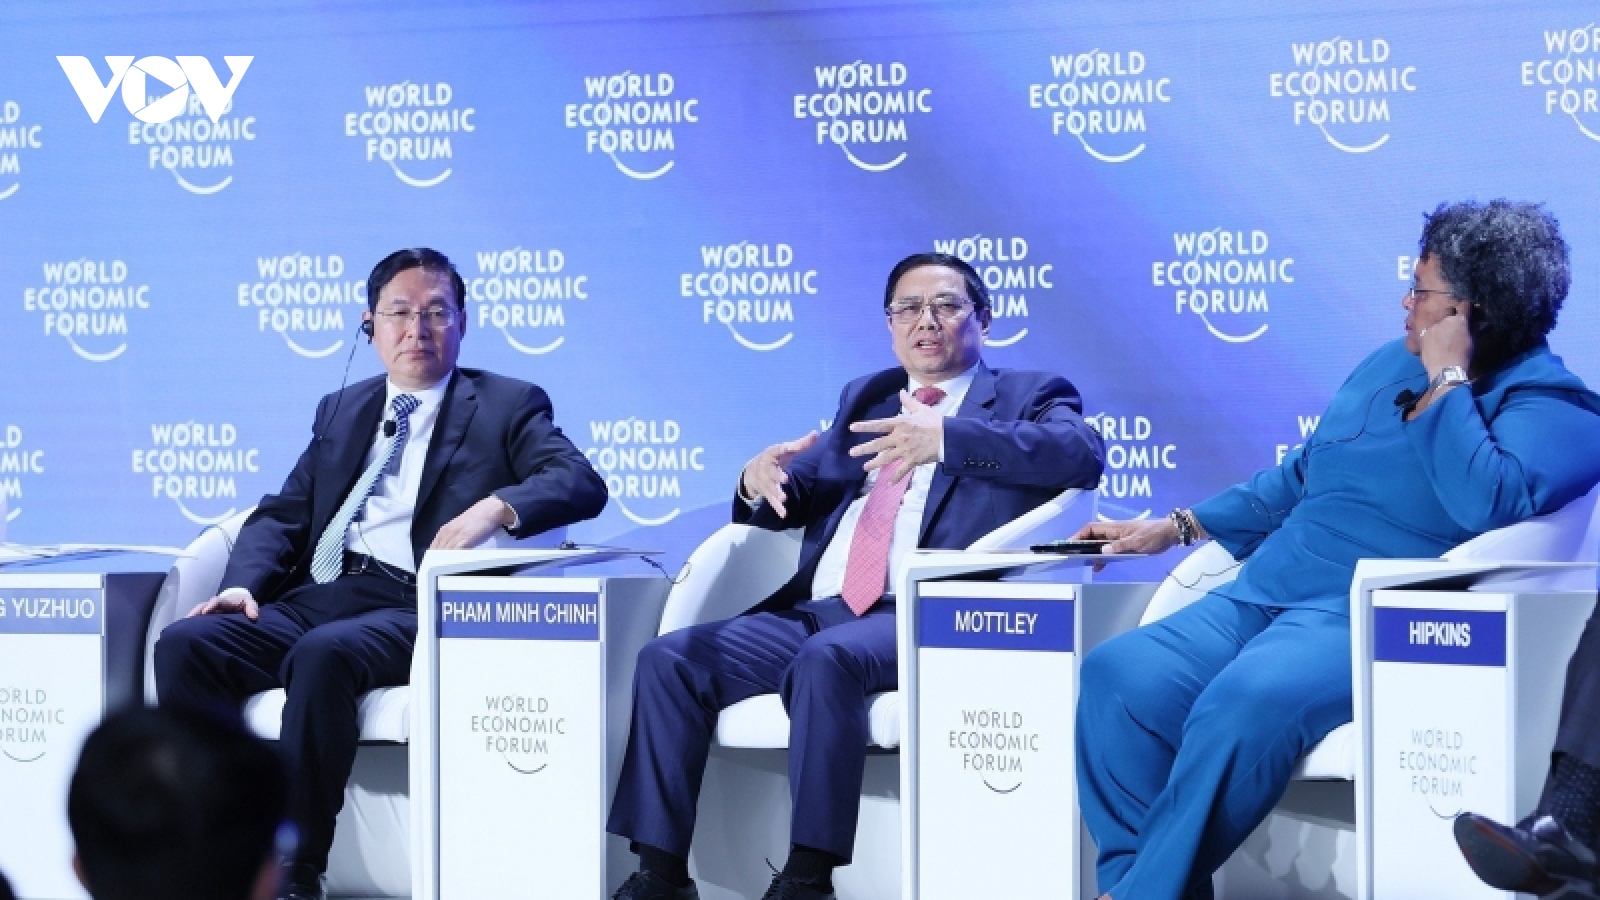 Thủ tướng phát biểu tại Hội nghị WEF Thiên Tân, nhấn mạnh "6 cơn gió ngược"